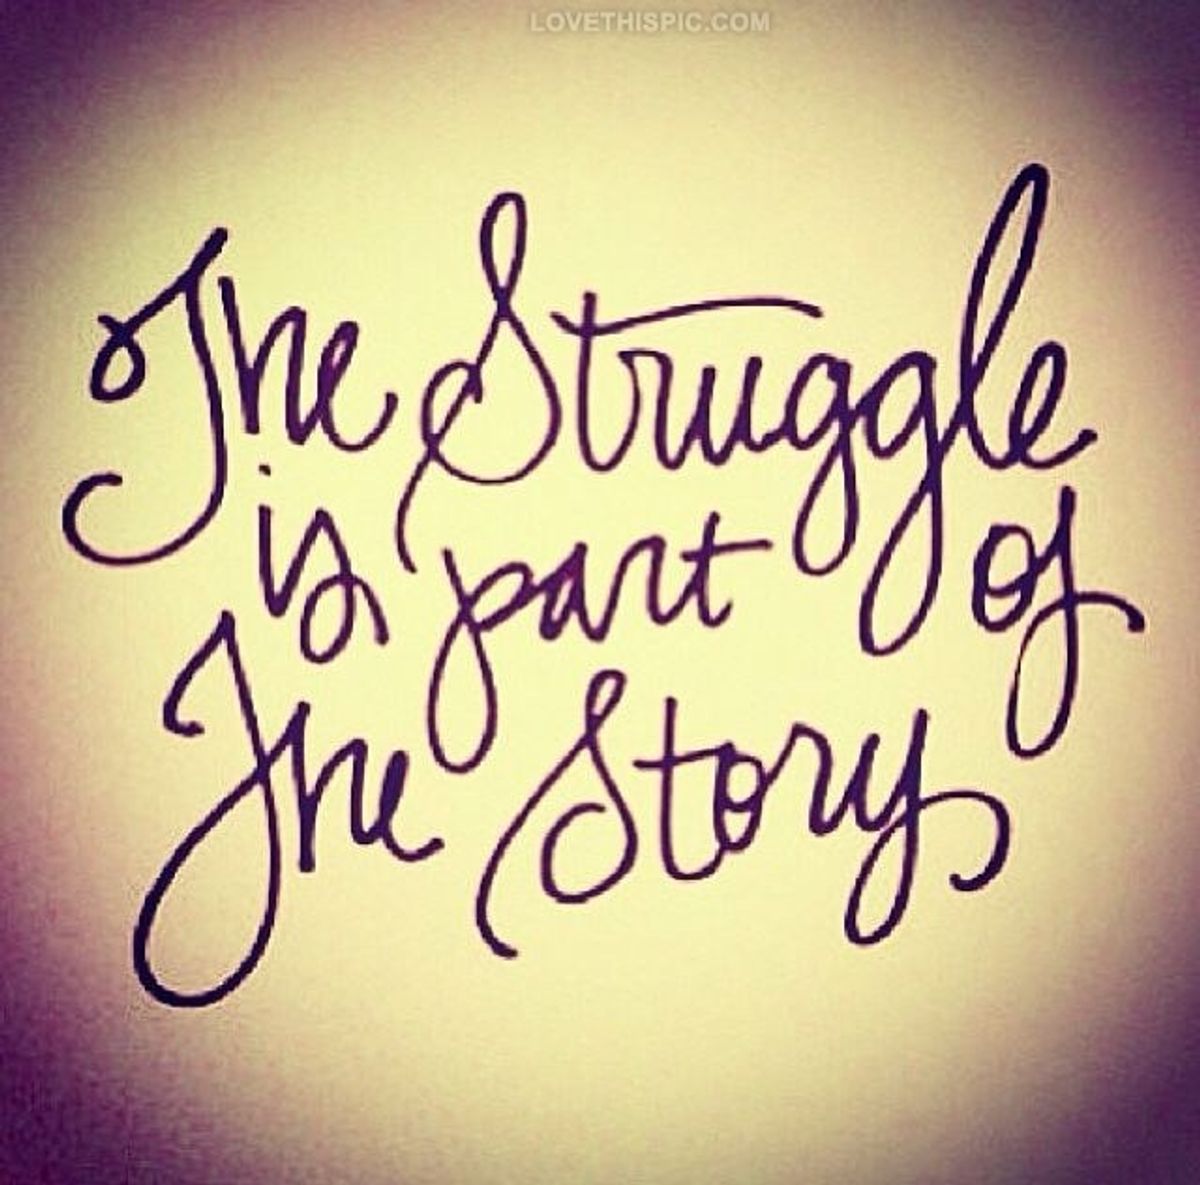 Trust Your Struggle